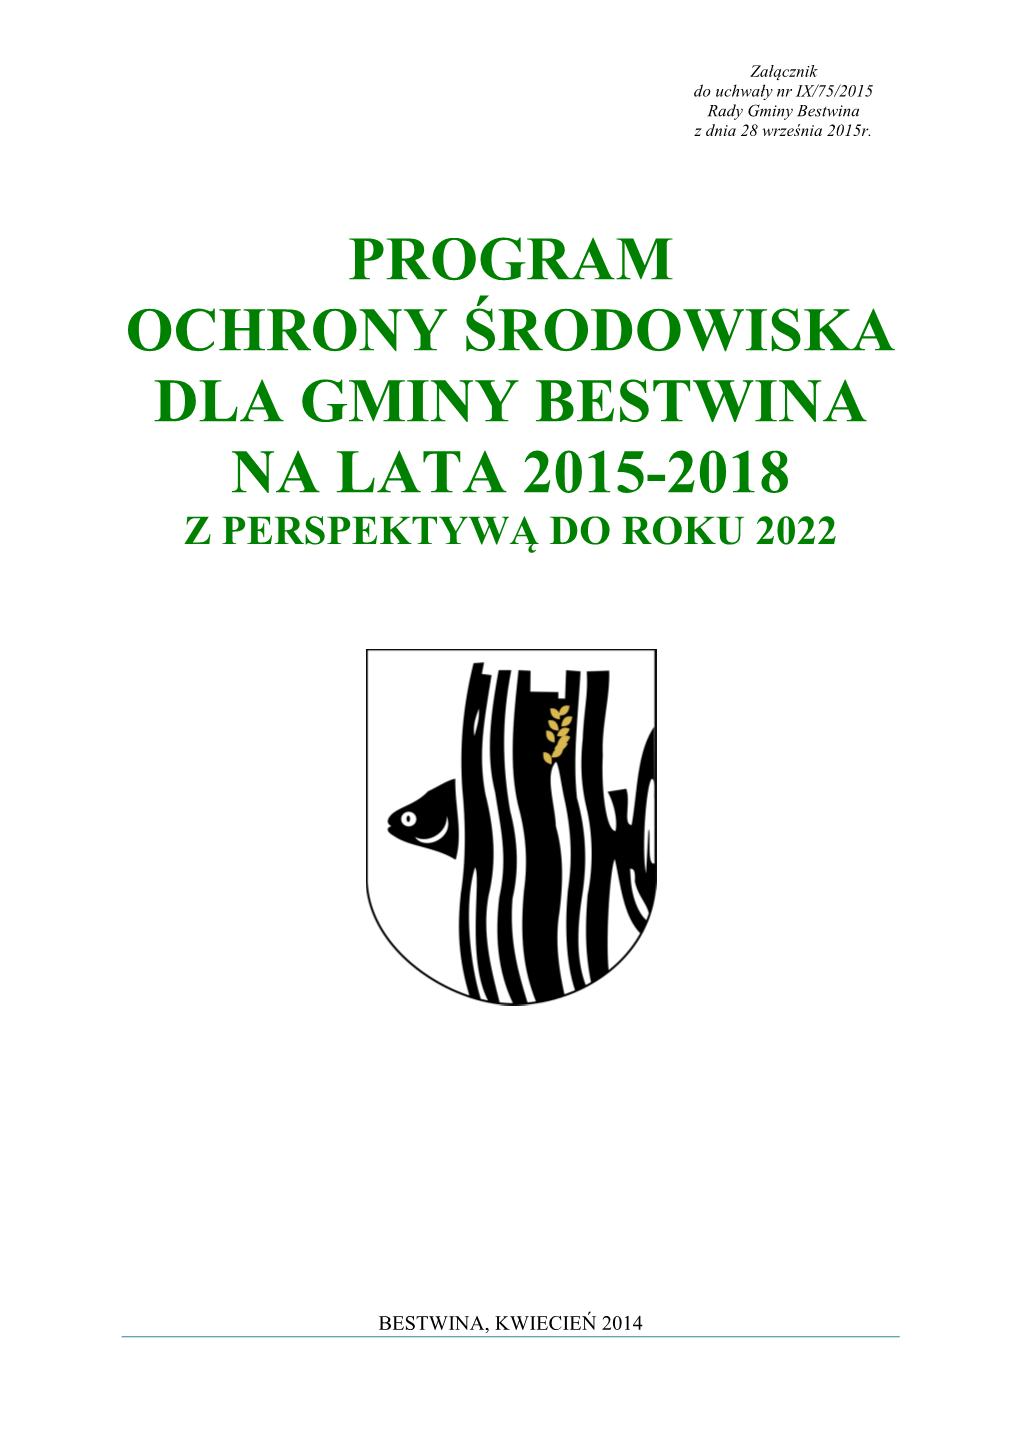 Program Ochrony Środowiska Dla Gminy Bestwina Na Lata 2015-2018